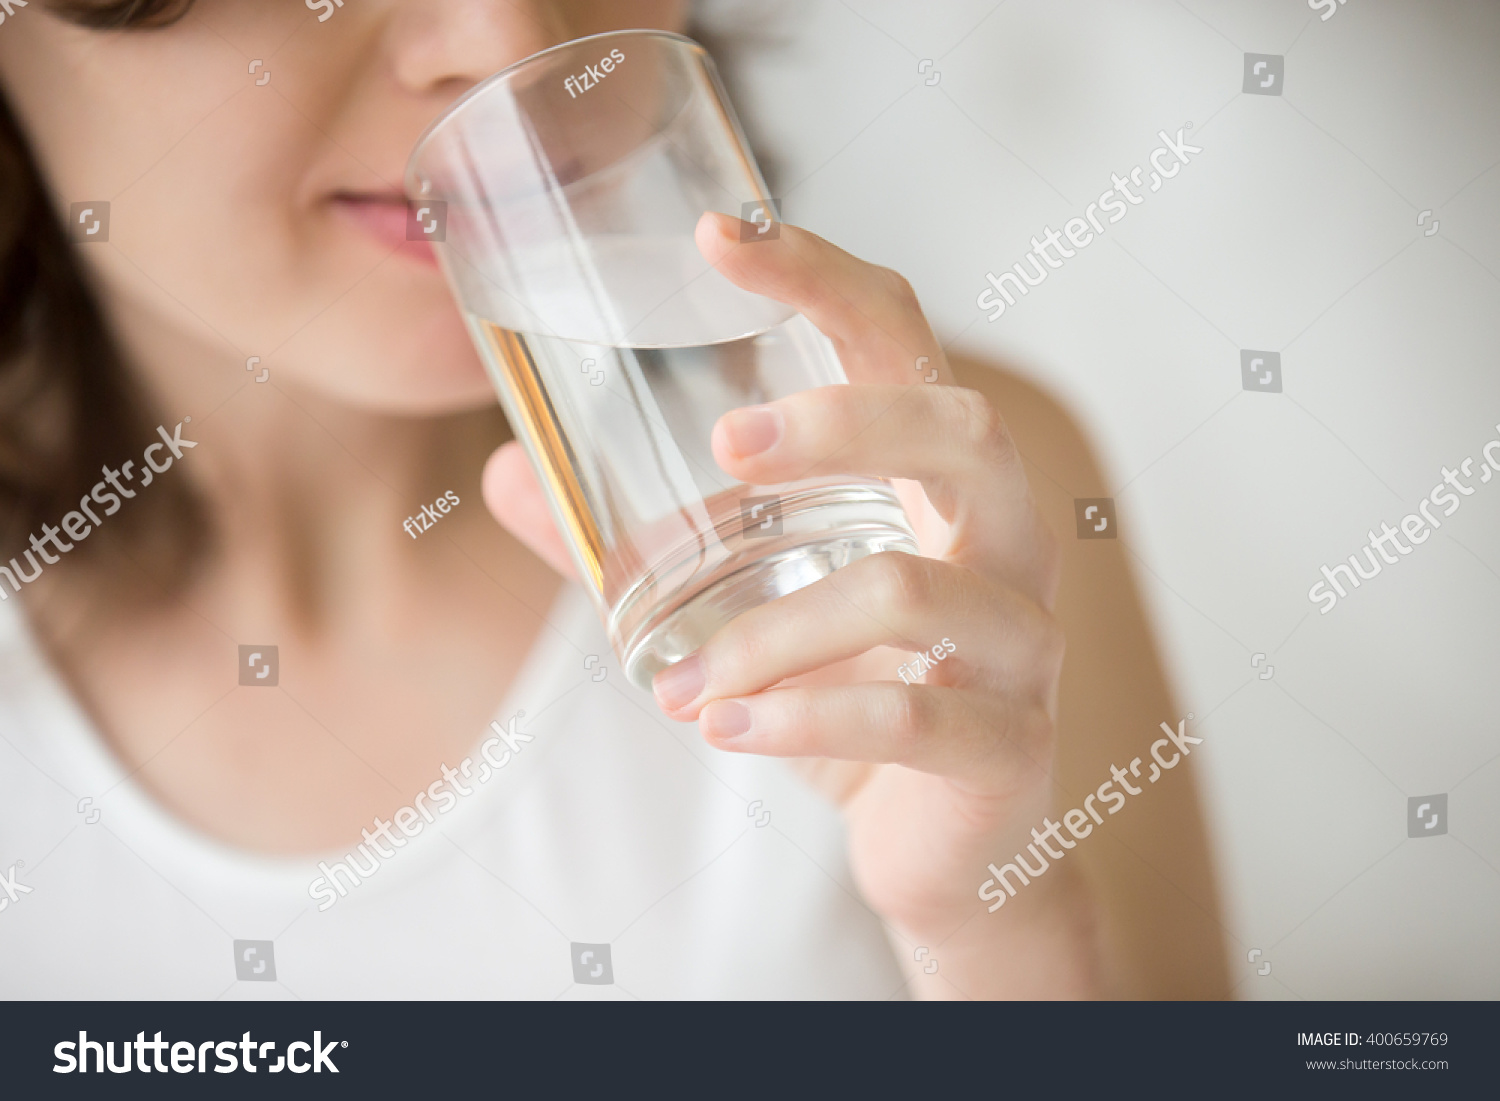 Glückliche schöne junge Frau Trinkwasser. Lächelnde kaukasische weibliche Modell hält transparentes Glas in der Hand. Nahaufnahme. Fokus auf den Arm #400659769